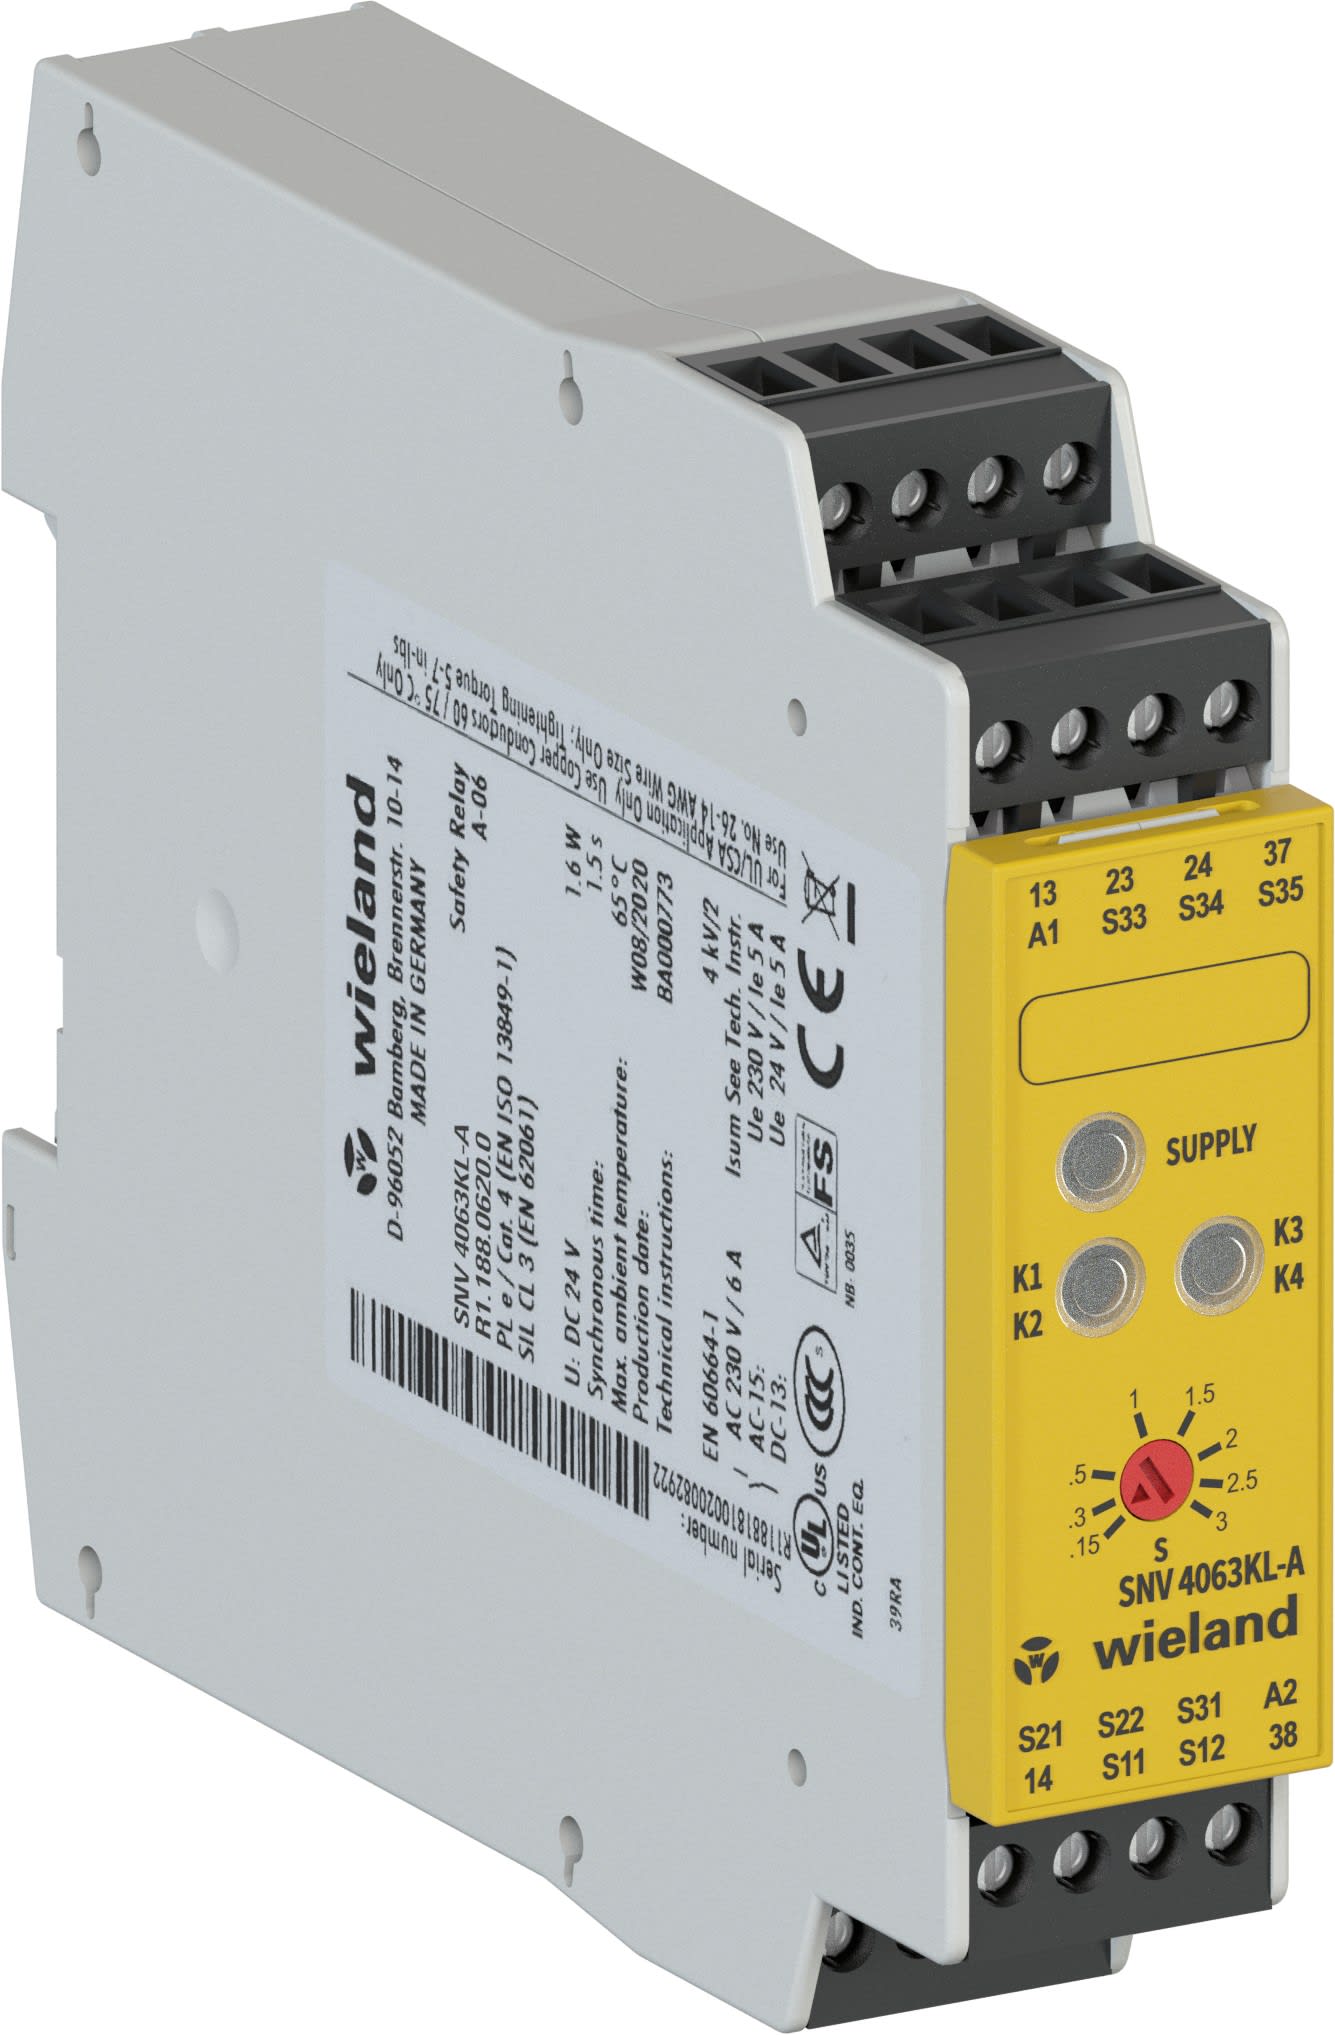 Wieland - snv4063kl-a 150s dc 24v-dispositif pour la surveillance circuits securises